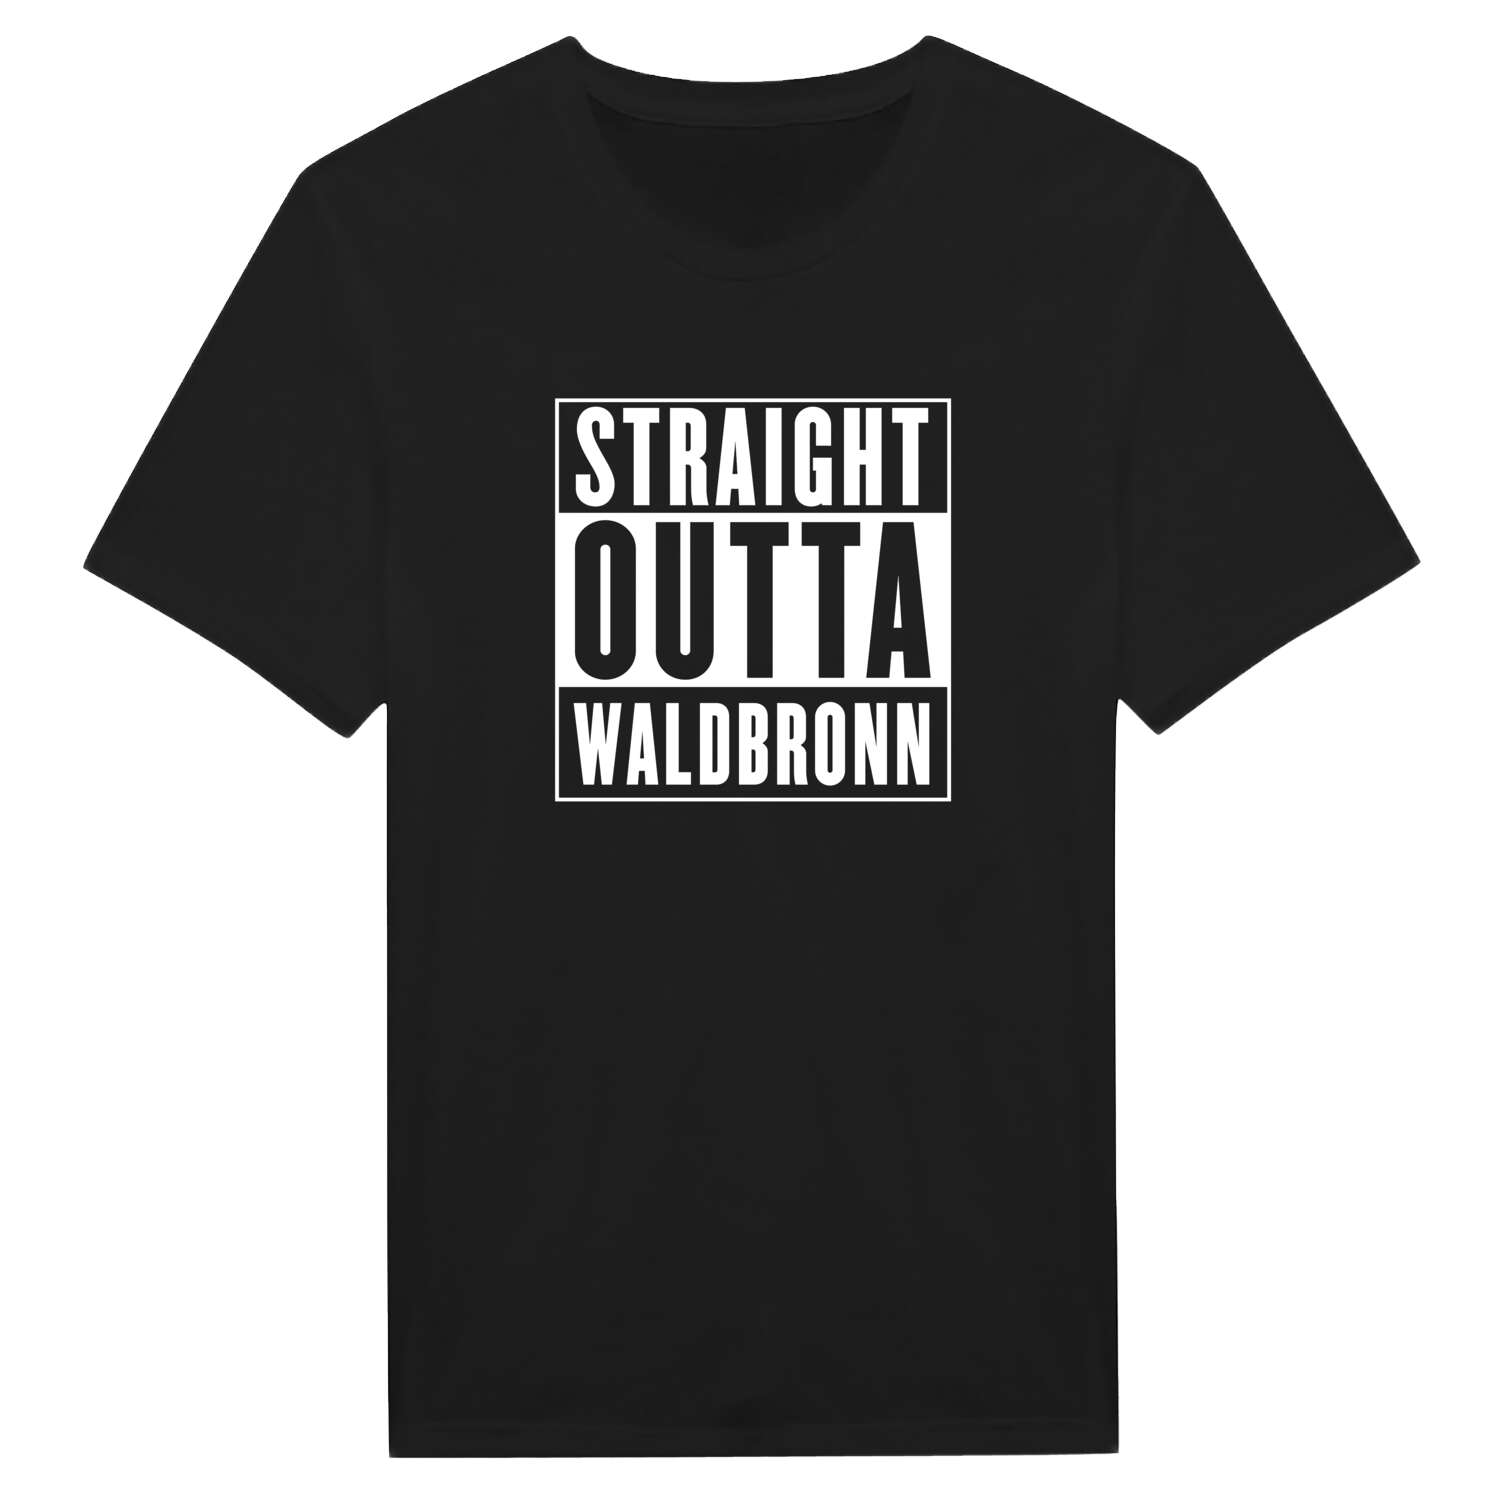 Waldbronn T-Shirt »Straight Outta«